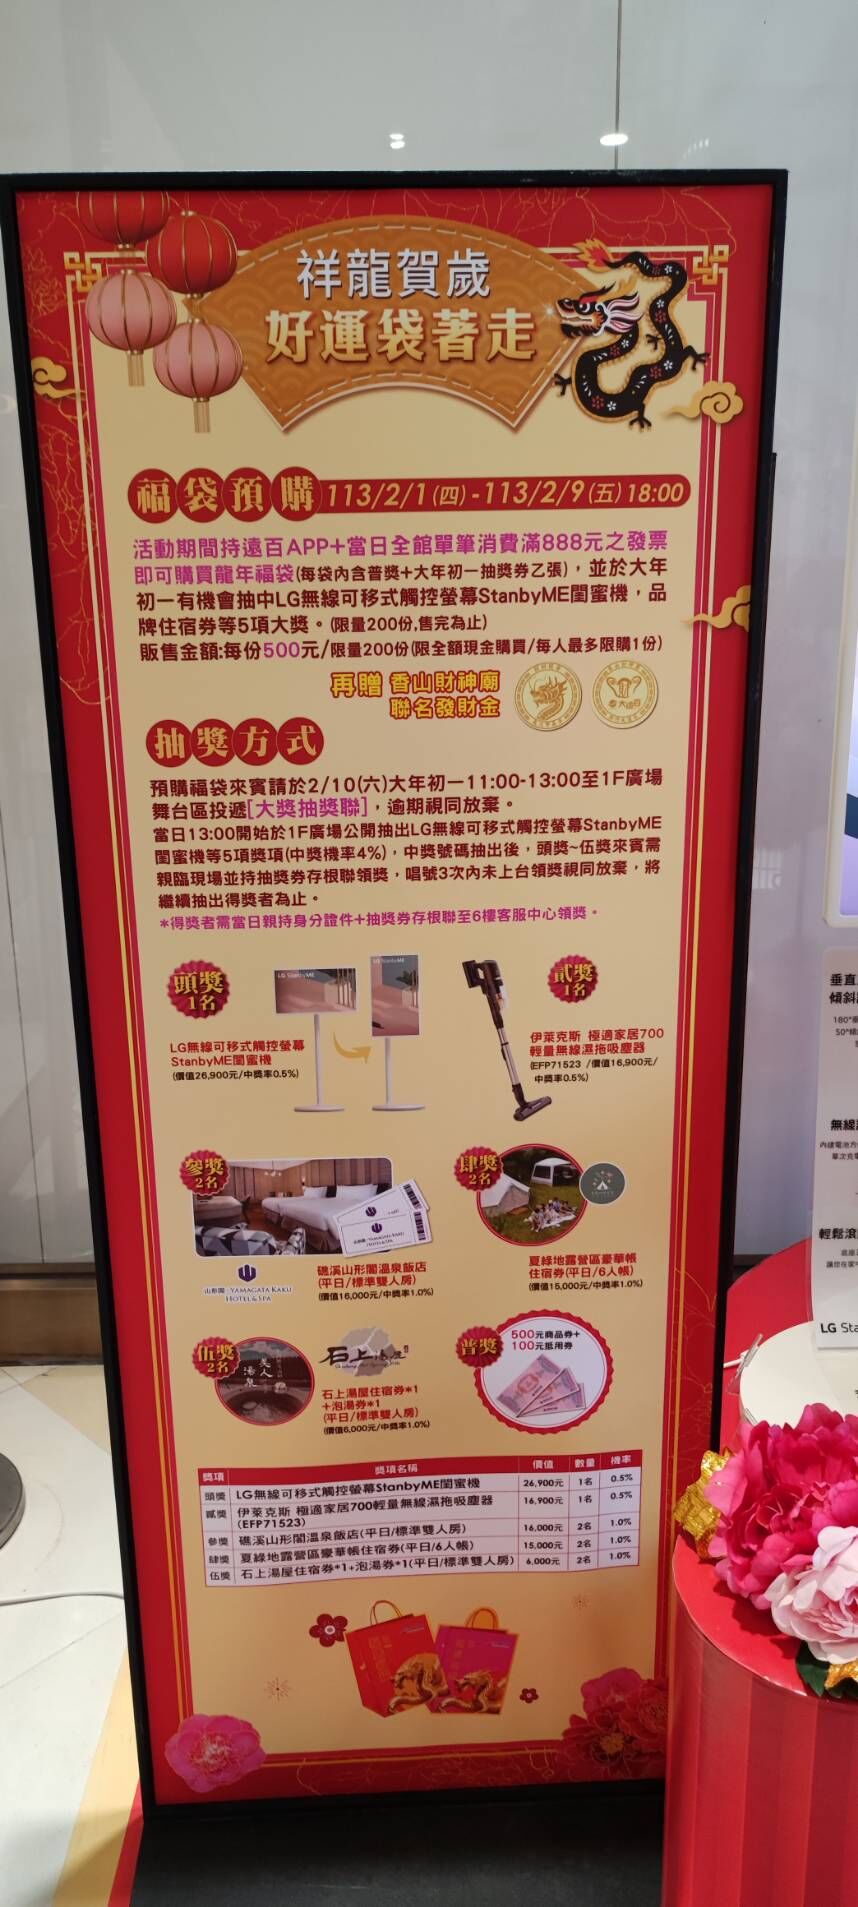 竹市大遠百西大店現場廣告詳盡每一福袋500元獎項商品。